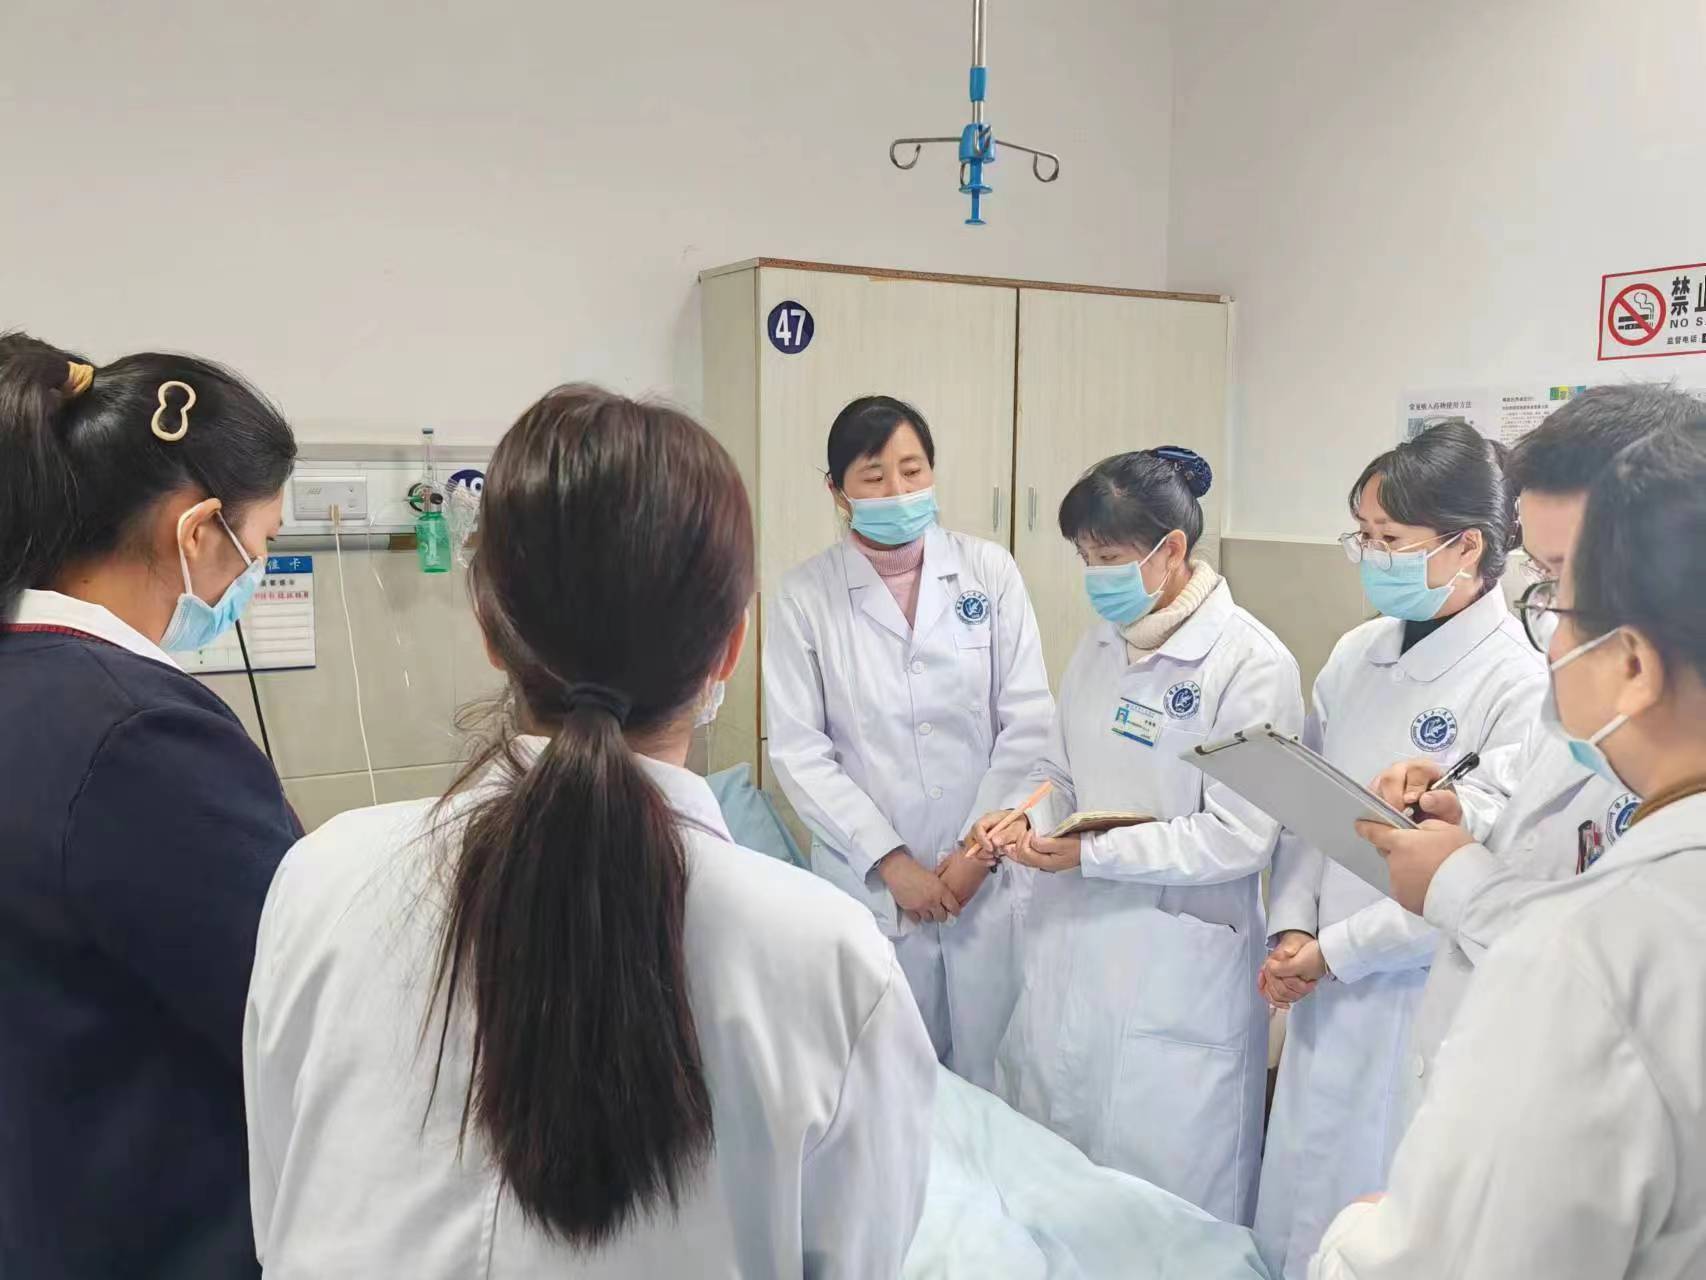 绿春县人民医院成功为肺恶性肿瘤患者开展化疗